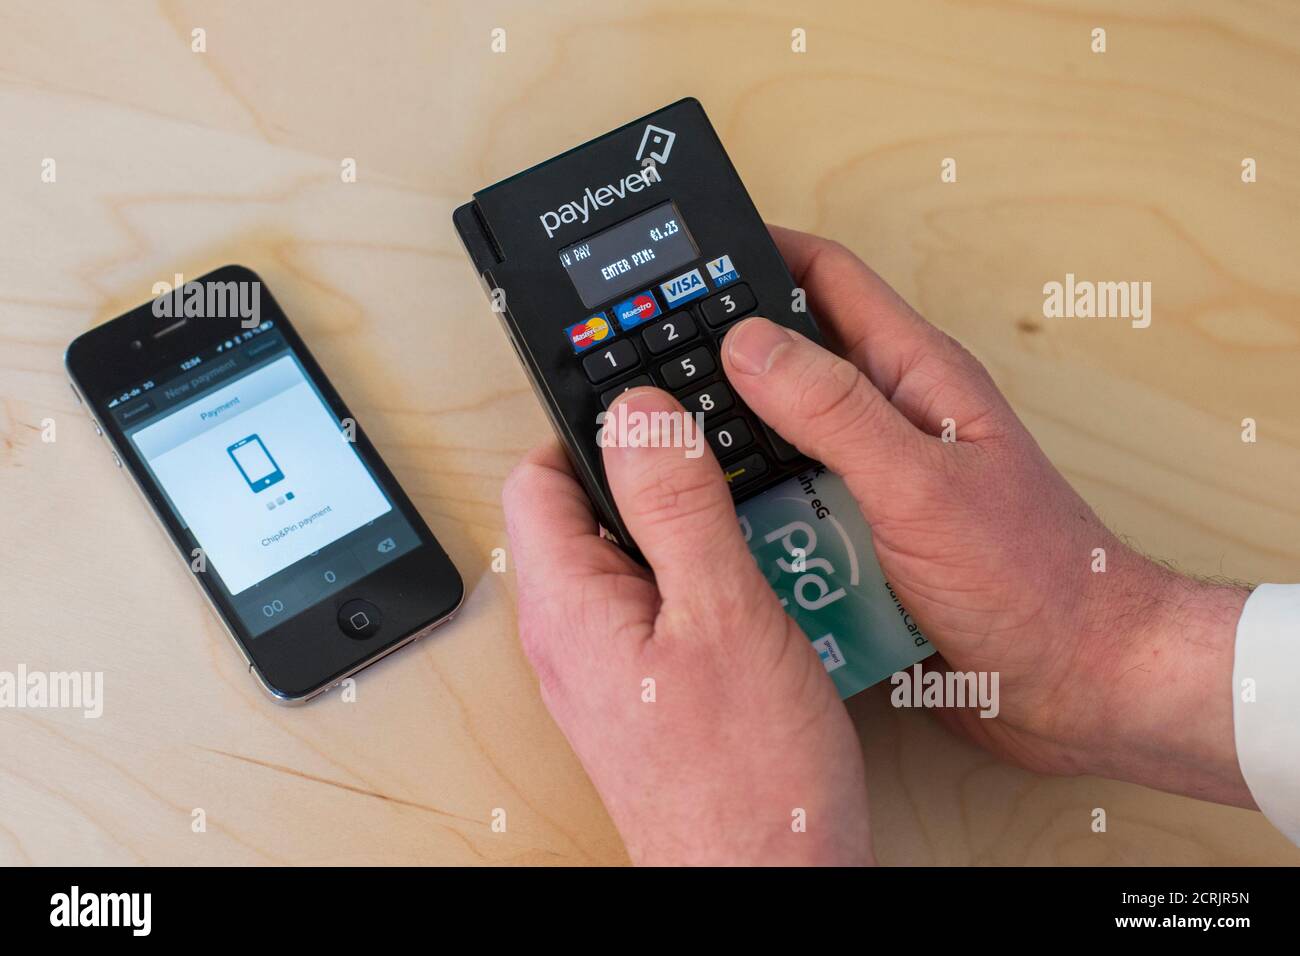 Konstantin Wolff, co-fundador del proveedor de servicios de pago móvil  Payleven, demuestra el servicio de pago de tarjetas móviles Chip y PIN  utilizando un smartphone y un lector de tarjetas de chip